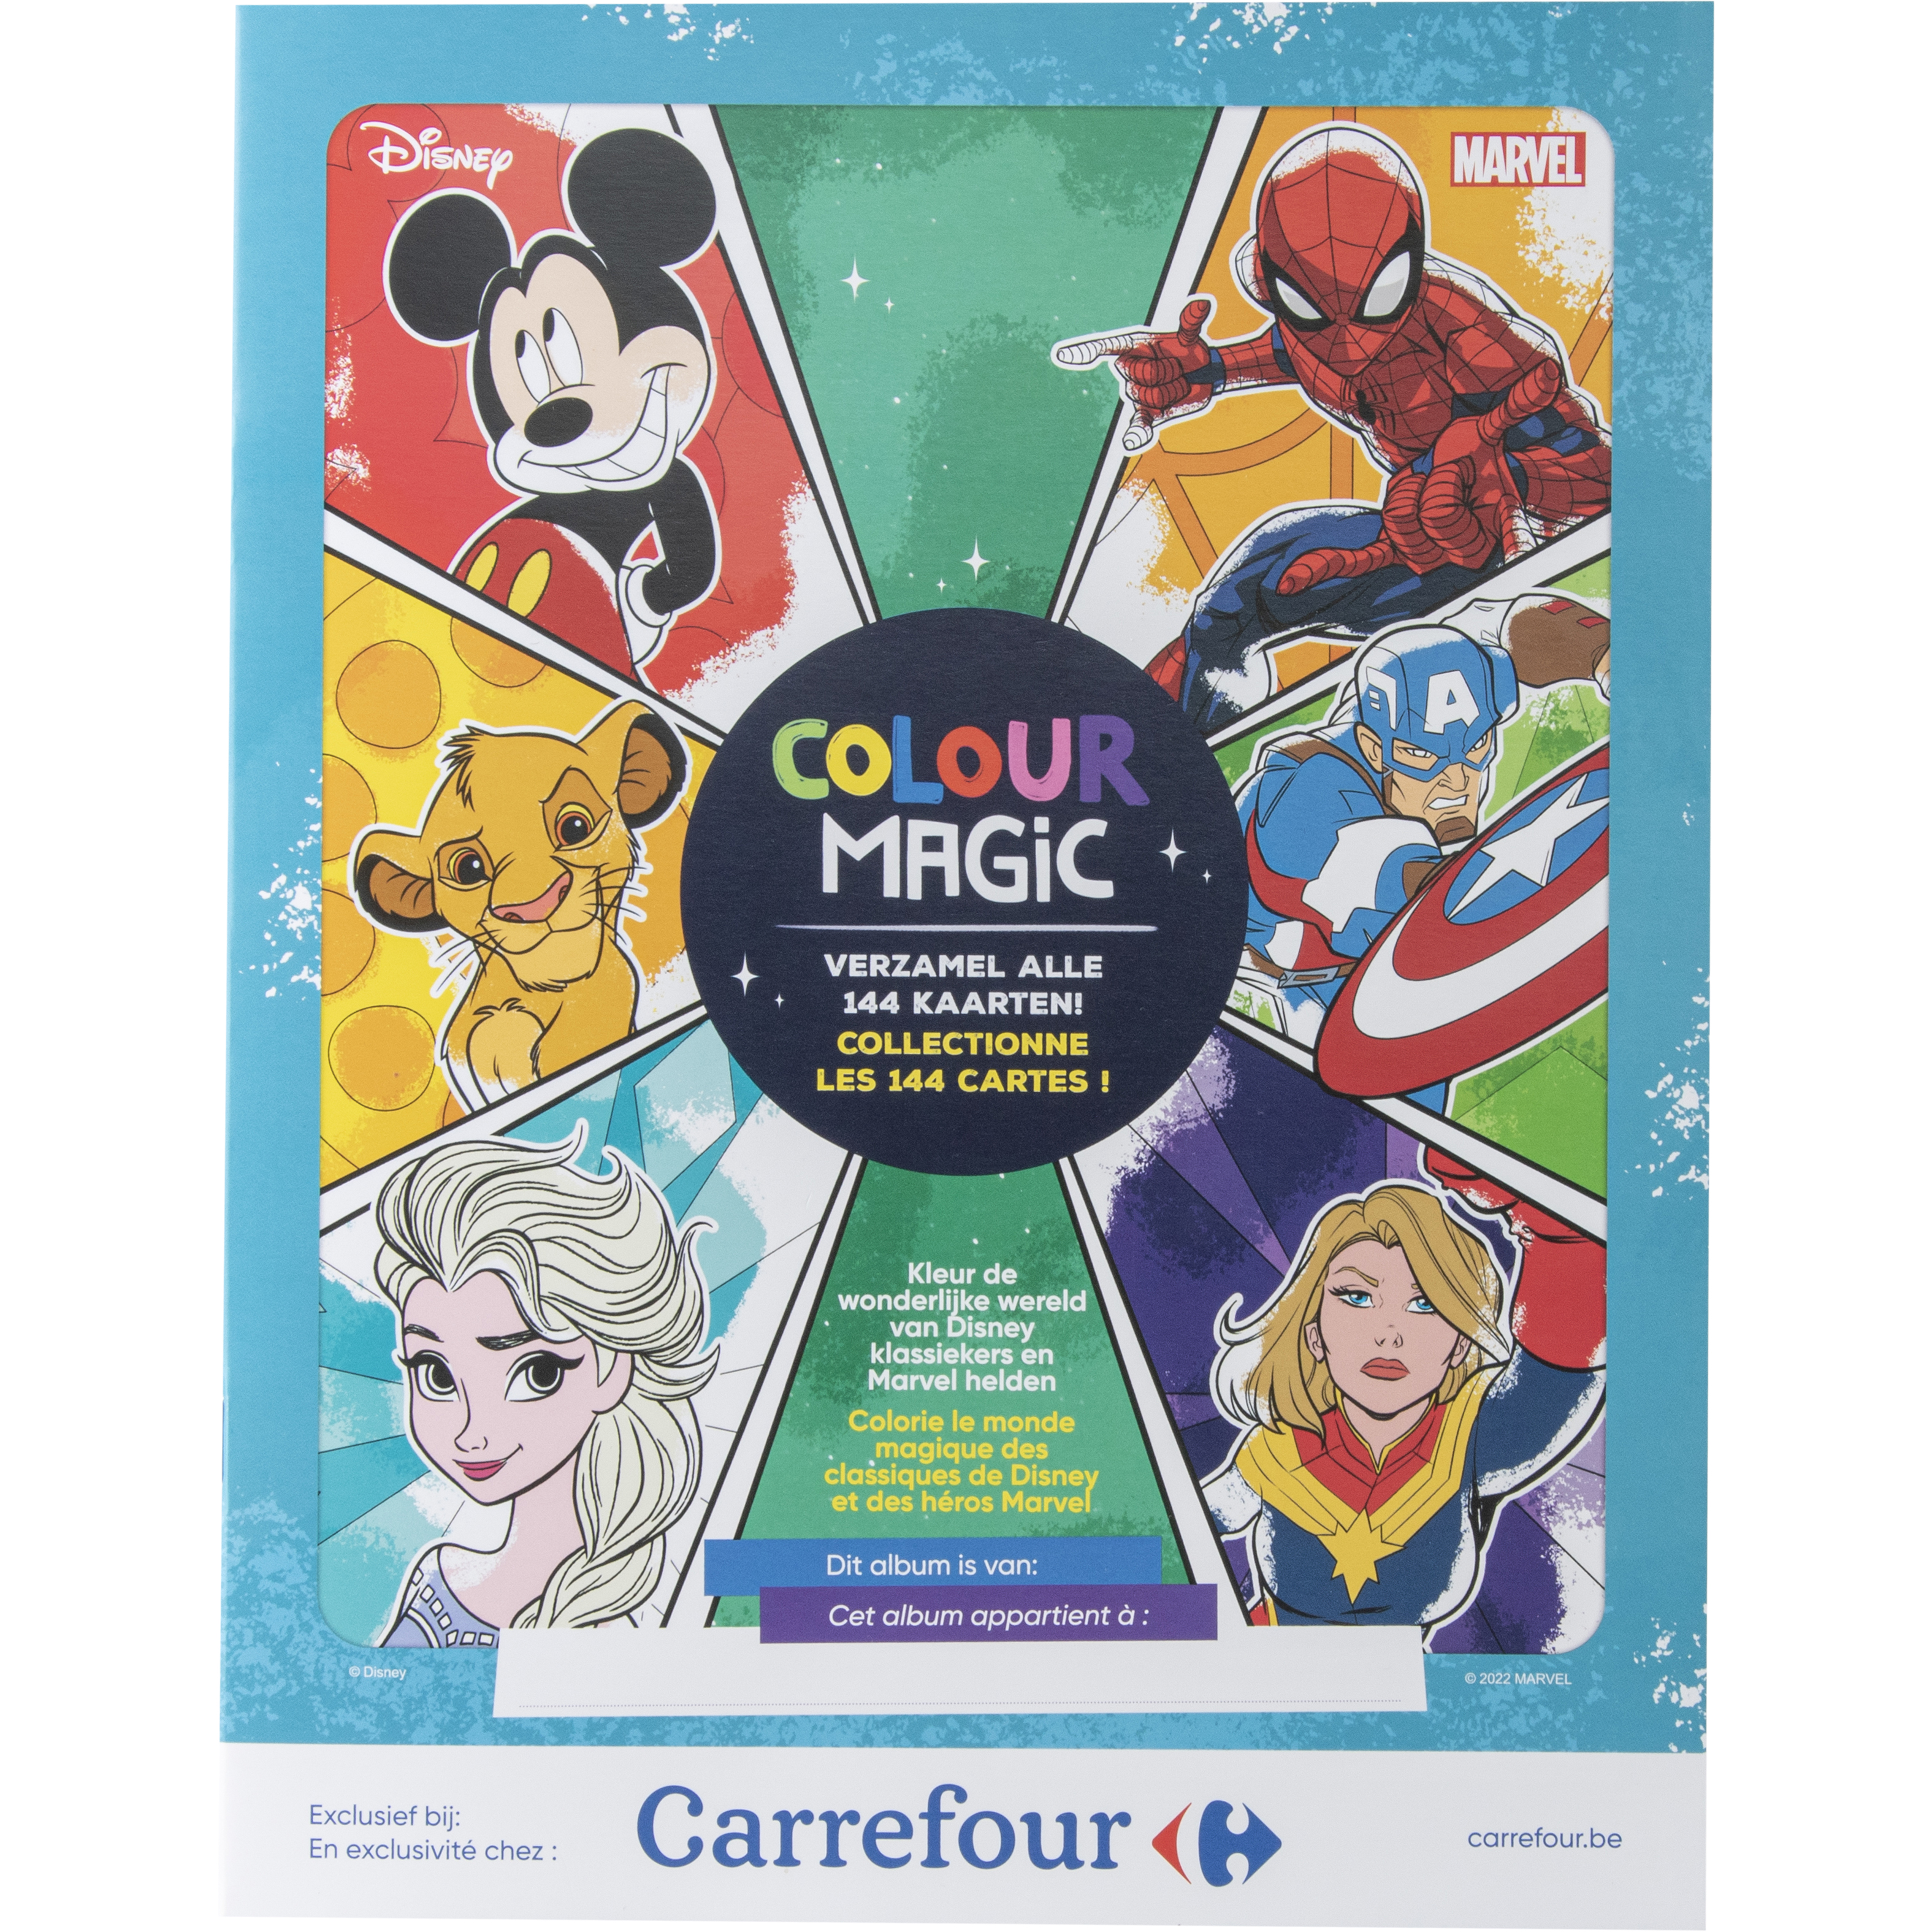 hoek Versterken Slovenië Carrefour lanceert nieuw verzamelalbum Disney-Marvel Color Magic